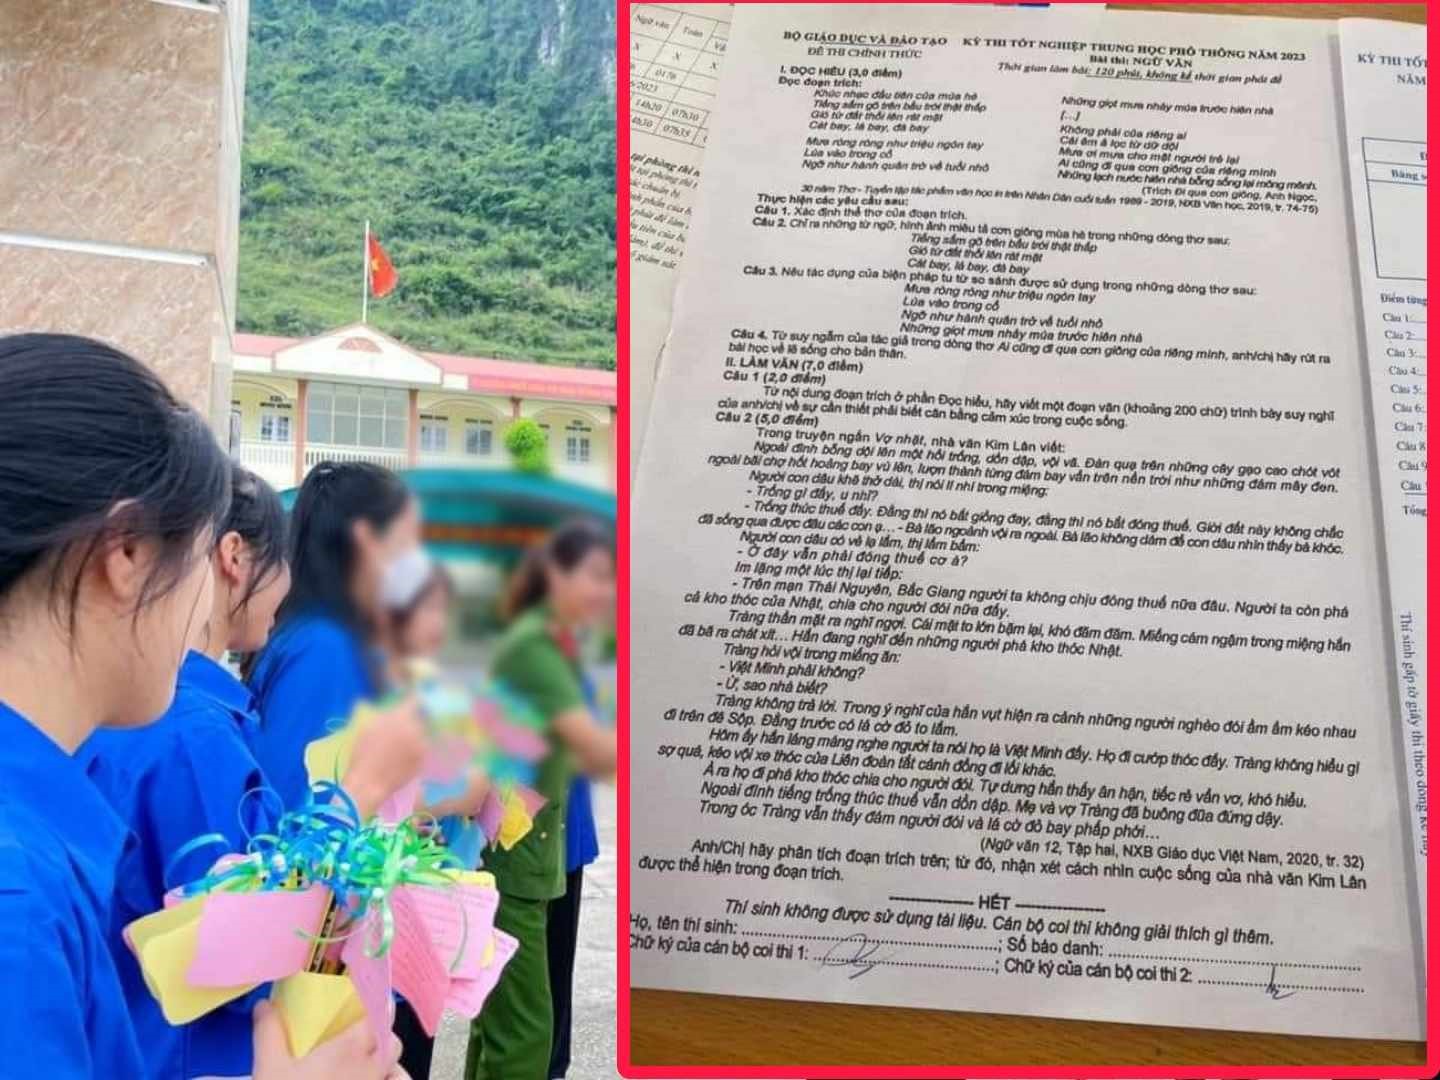 2 thí sinh làm lộ đề thi ở Cao Bằng, Yên Bái có thể bị xử lý hình sự